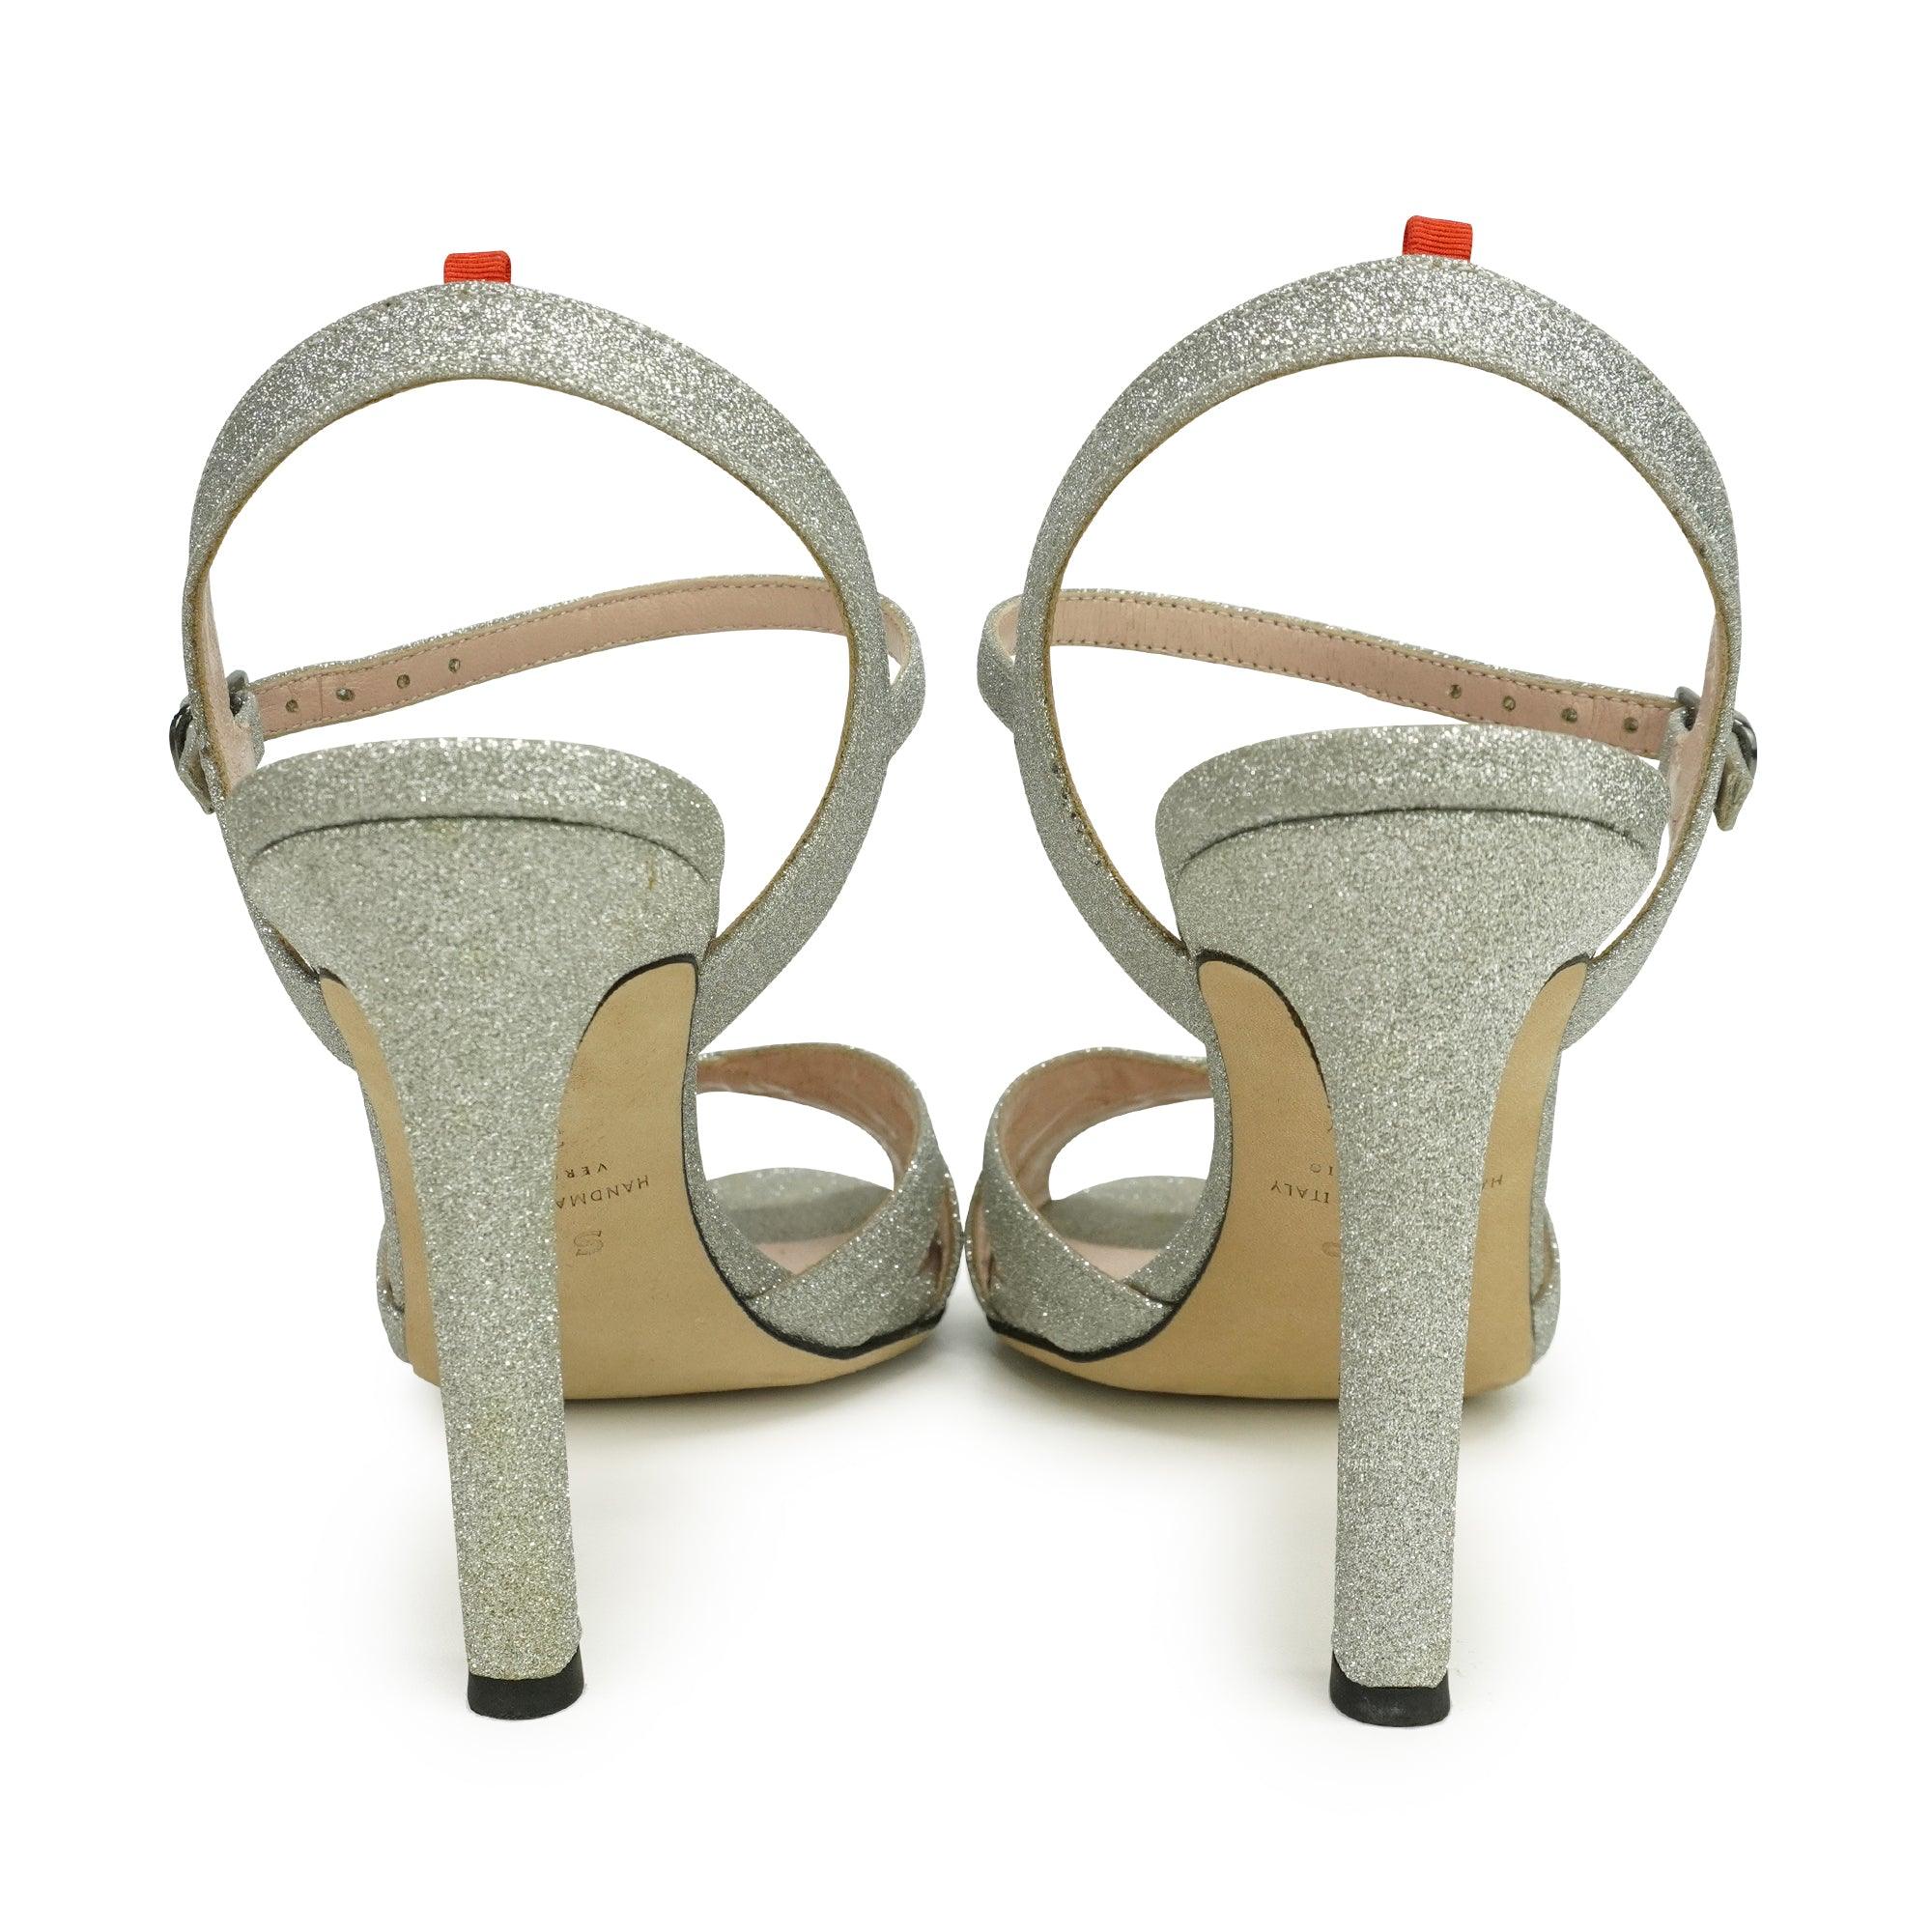 SJP Heels - Women's 37.5 - Fashionably Yours